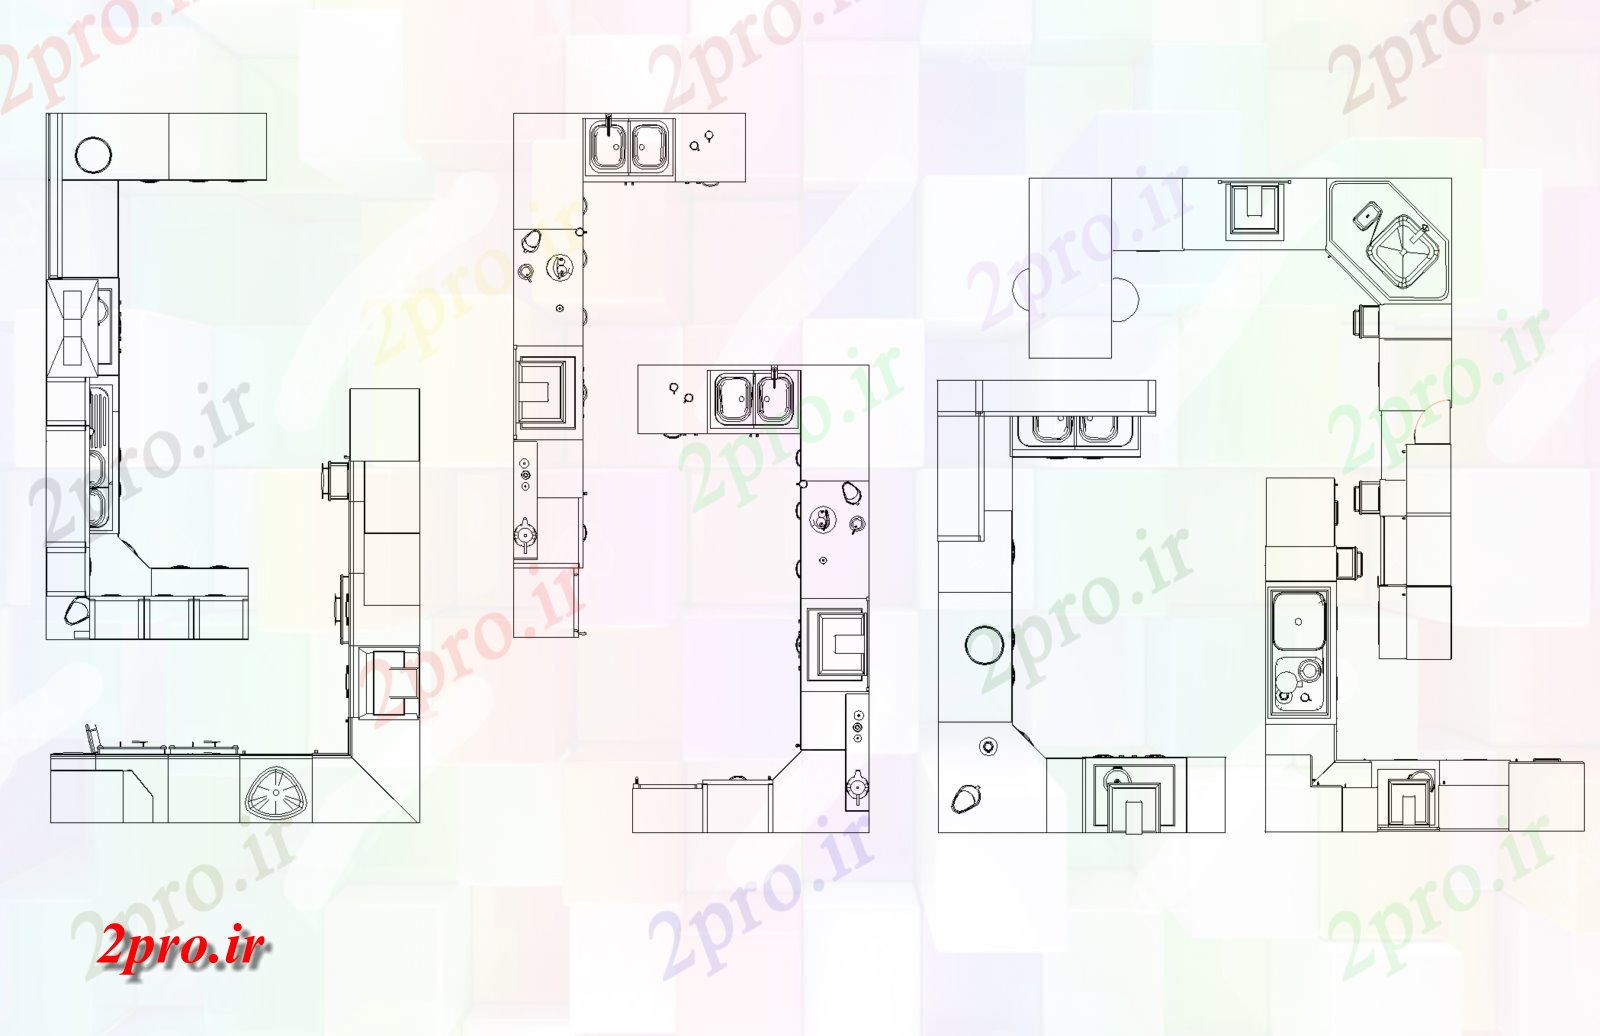 دانلود نقشه آشپزخانه طراحی کابینت (کد74797)